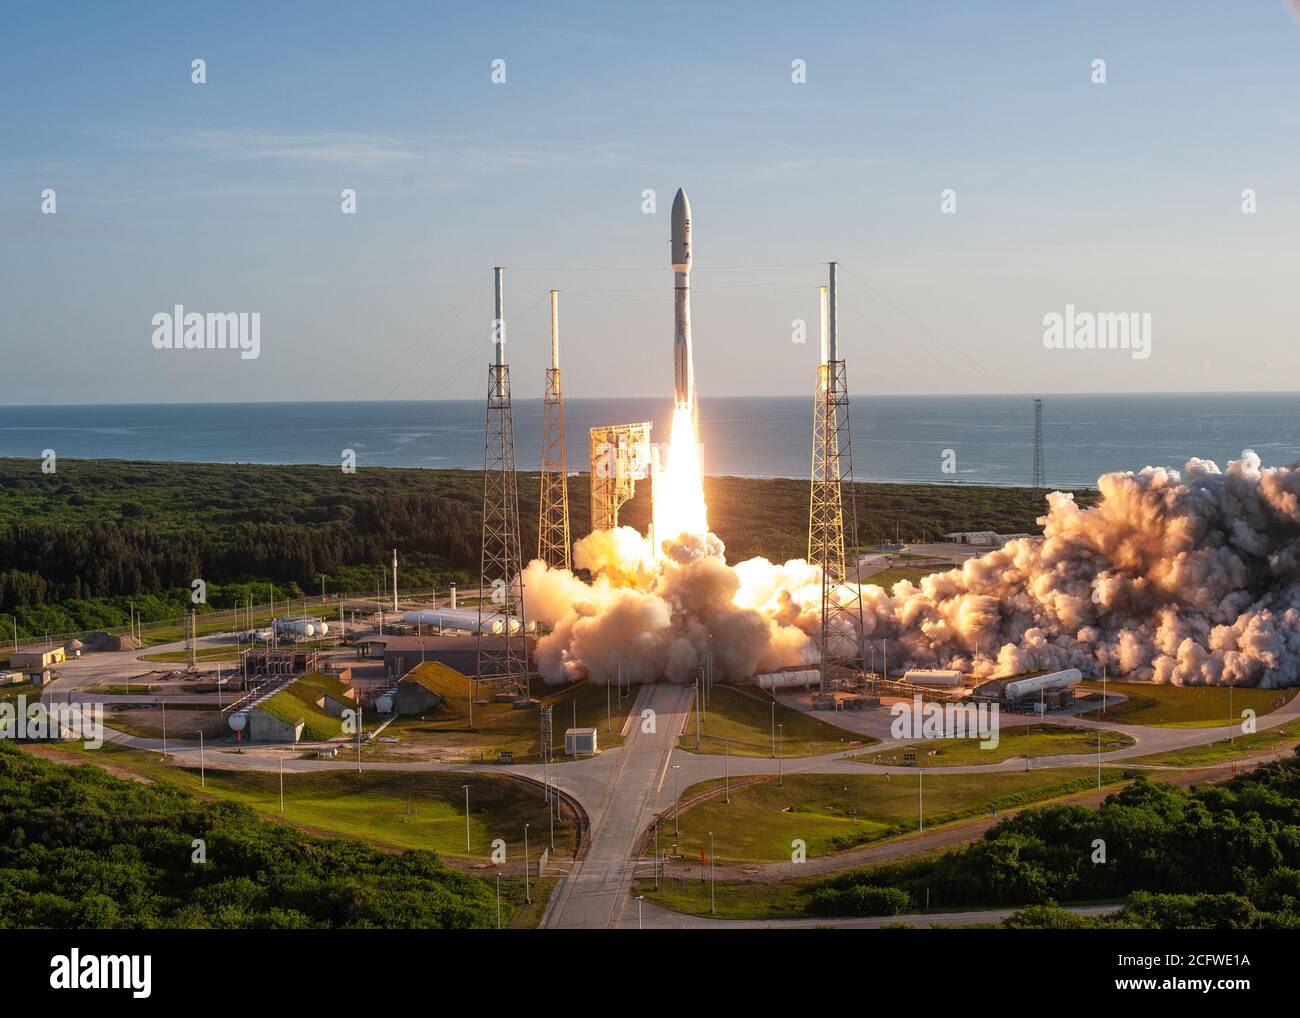 CAPE CANVERAL, FL, USA - 30 juillet 2020 - en toile de fond, une fusée United Launch Alliance Atlas V 541 s'élève du complexe Space Launch 4 Banque D'Images